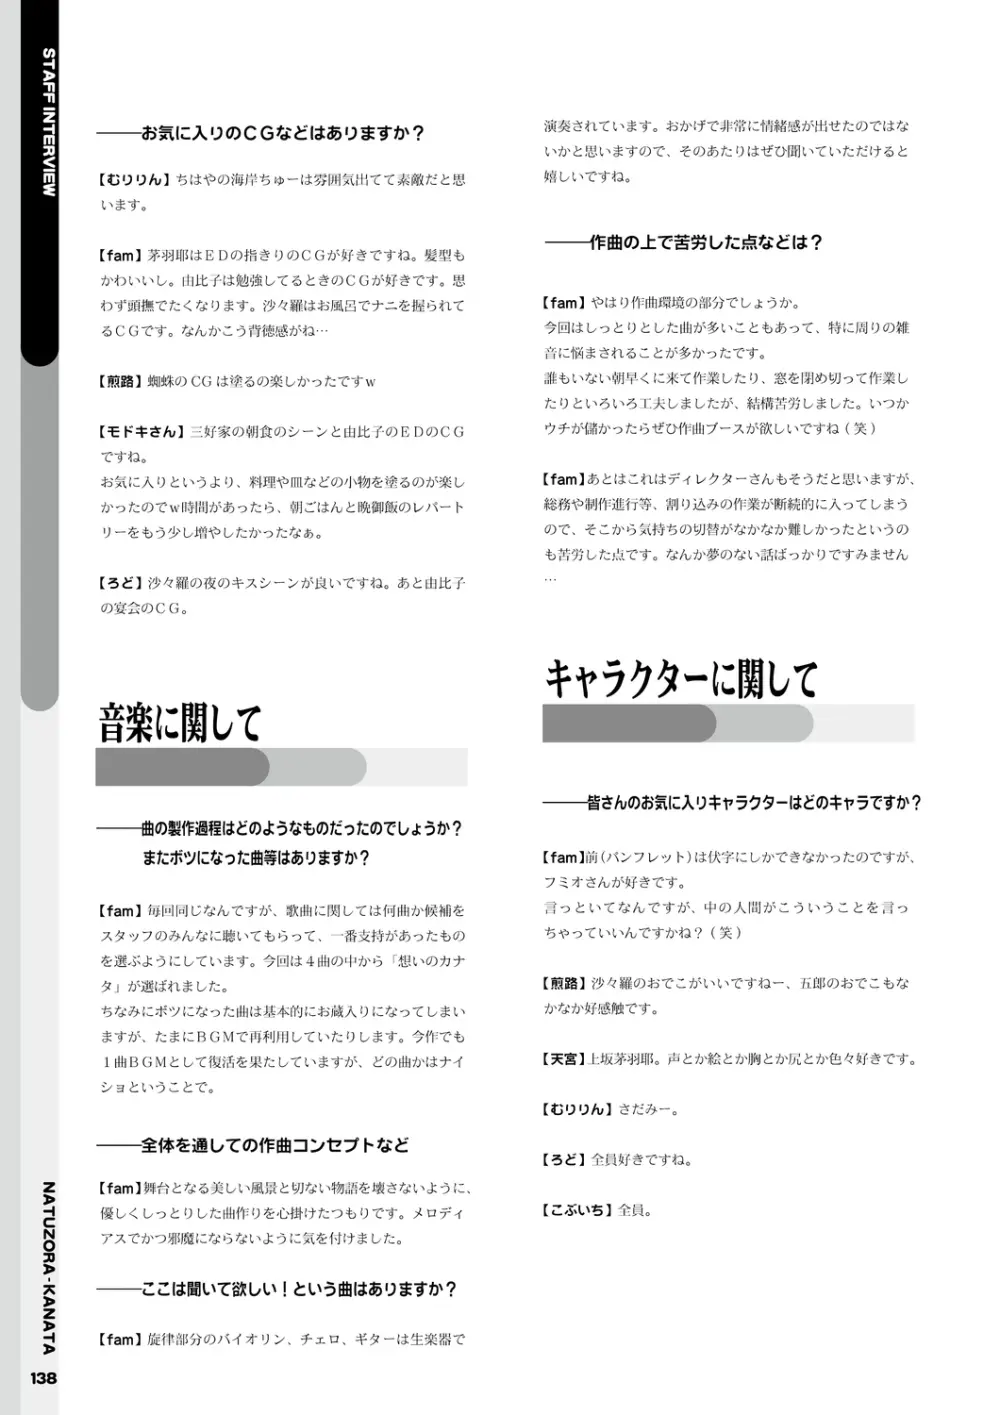 夏空カナタ オフィシャル・ビジュアルファンブック 140ページ